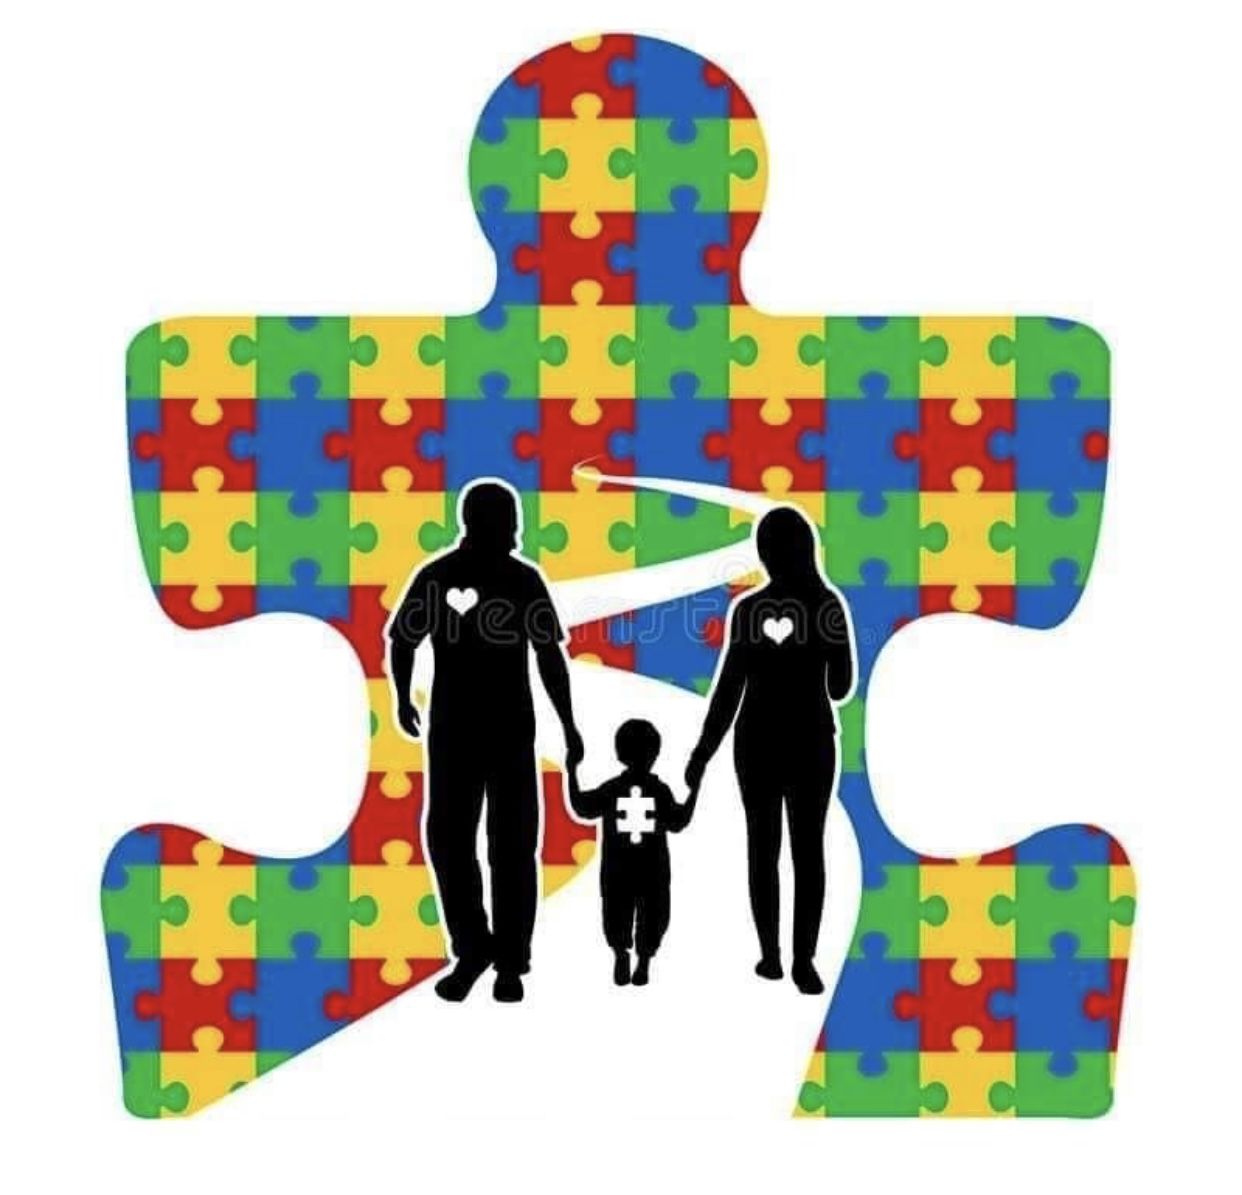 روش مقابله با استرس در خانواده کودک اوتیسم